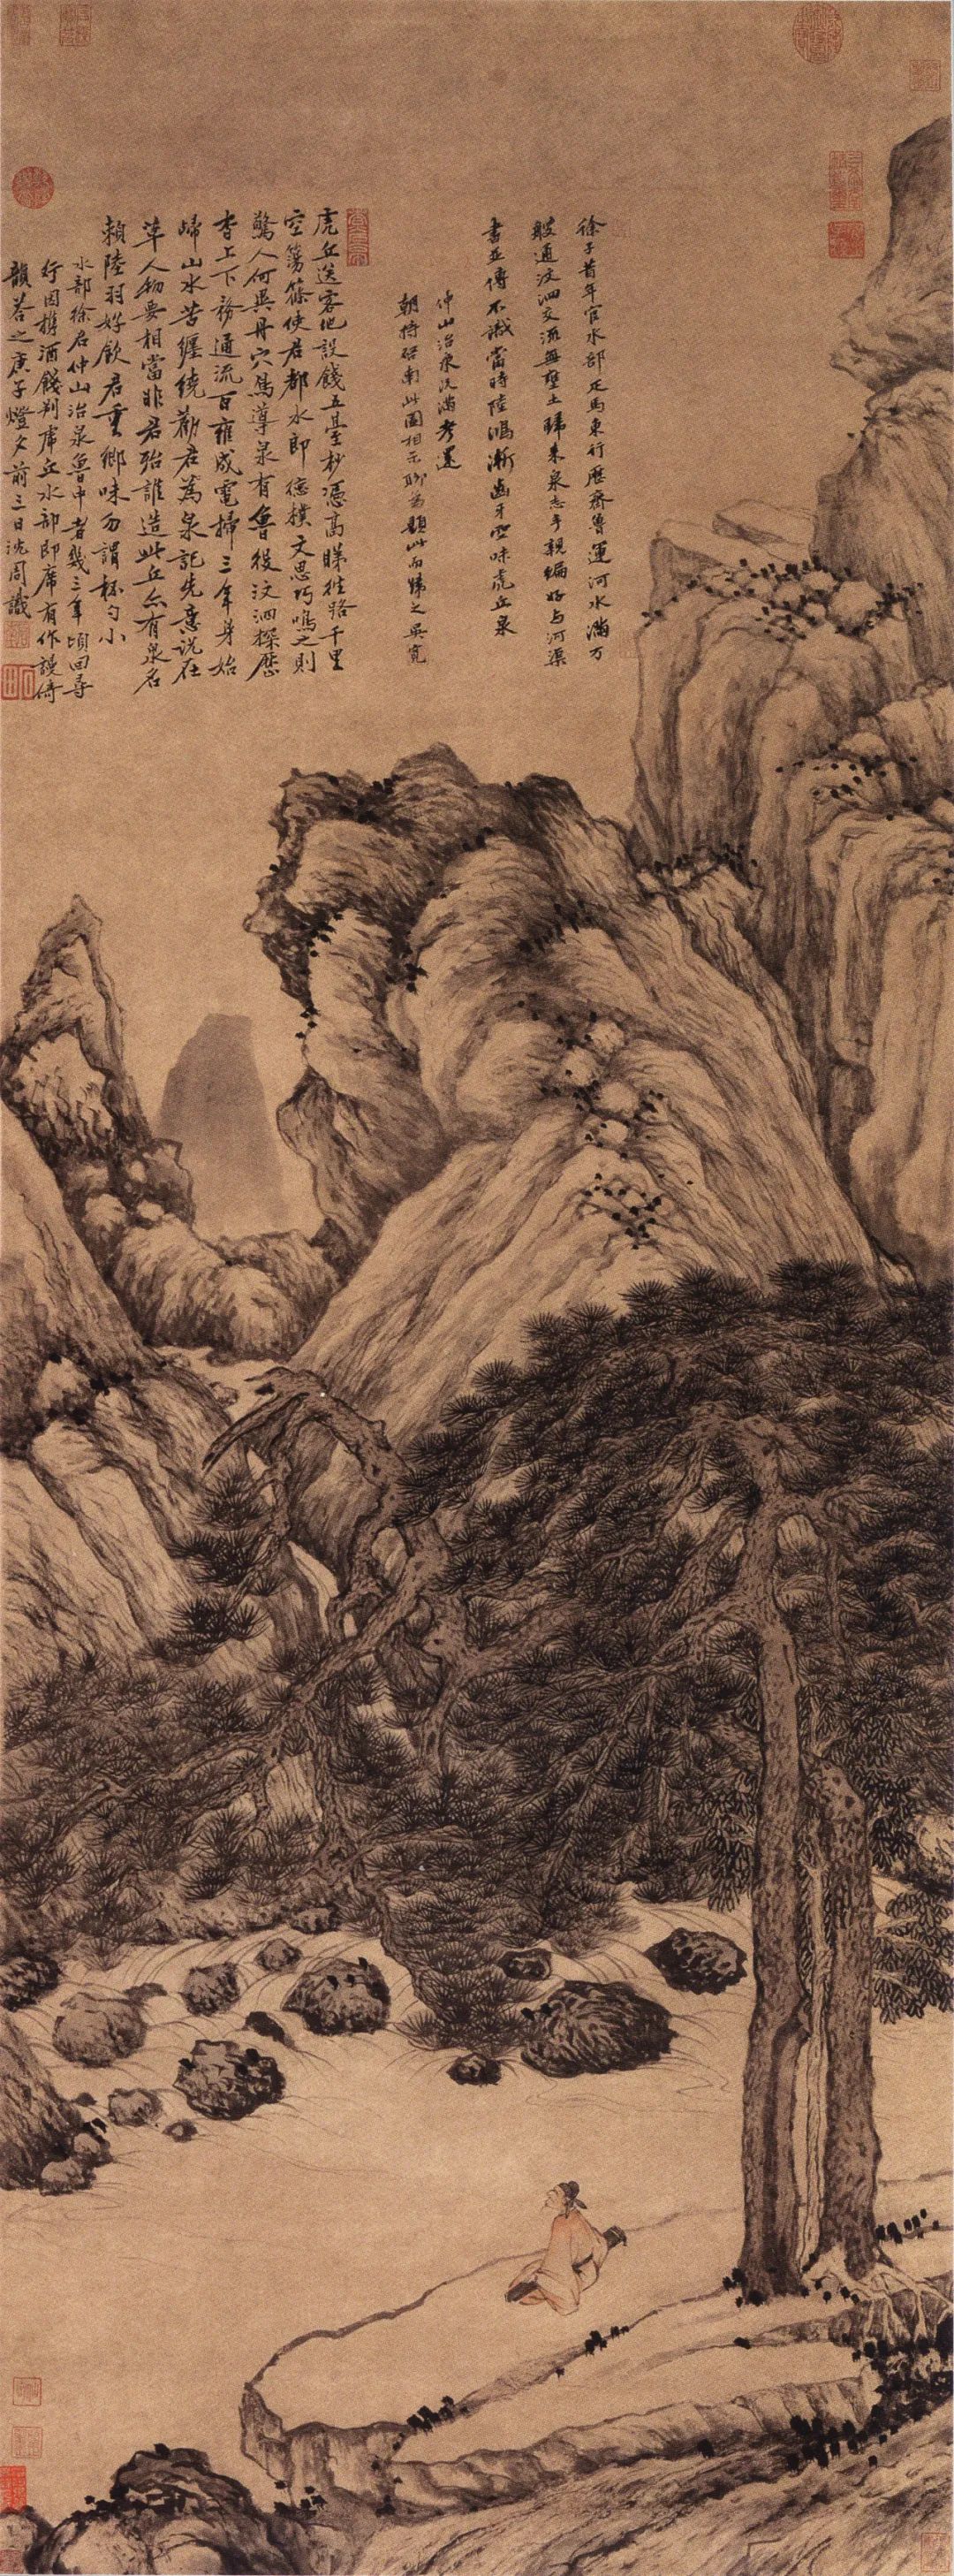 明沈周《虎丘观泉图》（现定名《虎丘送客图》），天津博物馆藏